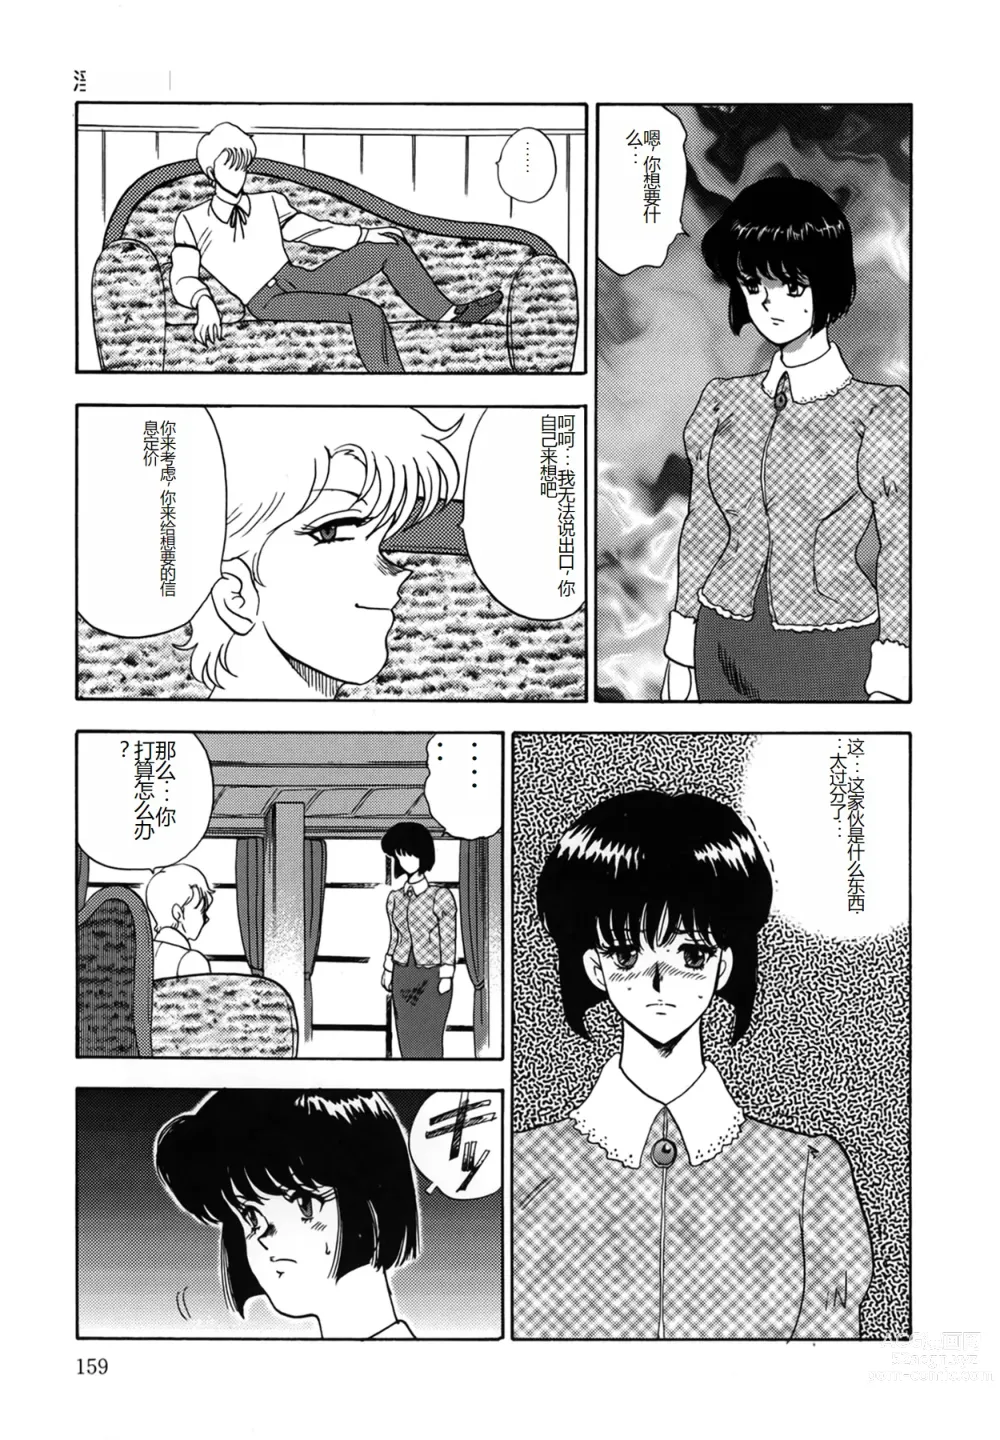 Page 159 of manga Inbi Teikoku